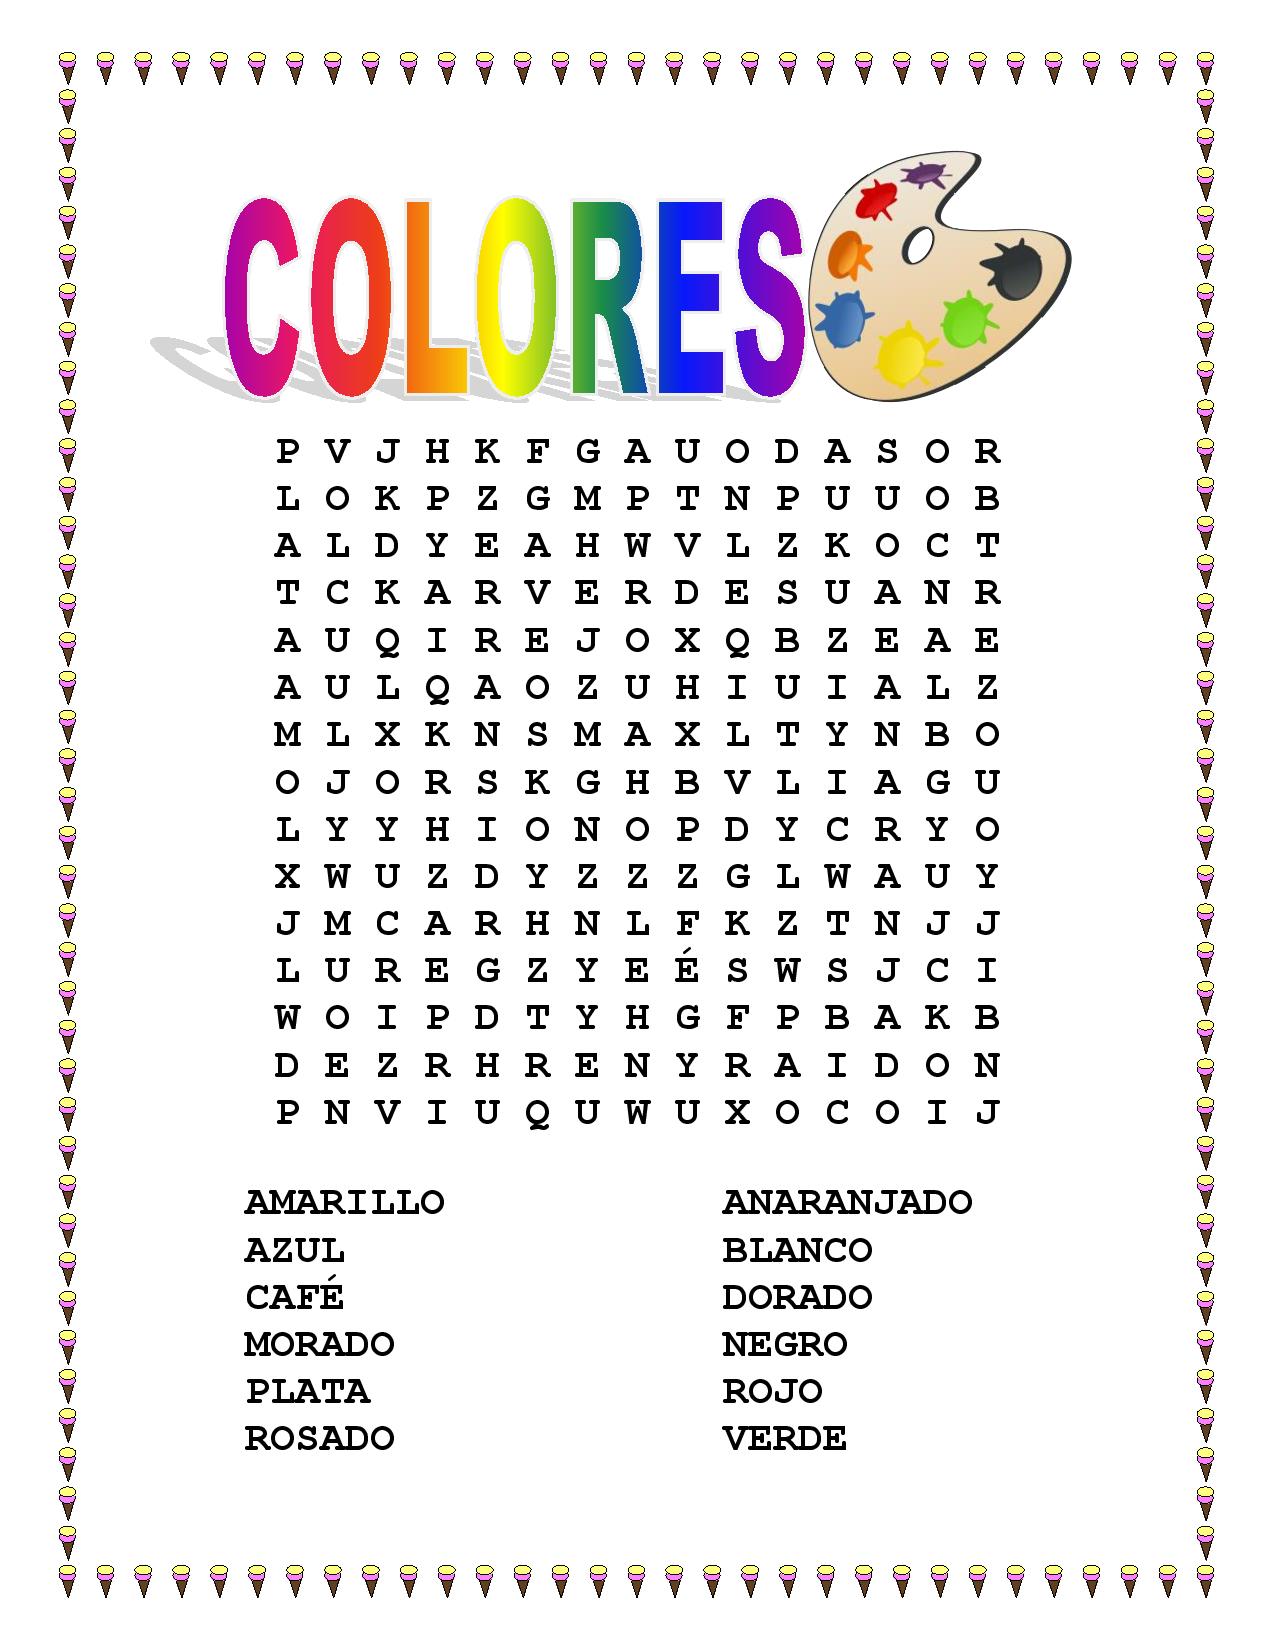 miscellaneous-lesson-spanish-colors-vocabulary-word-search-colorea-tu-helado-favorito-the